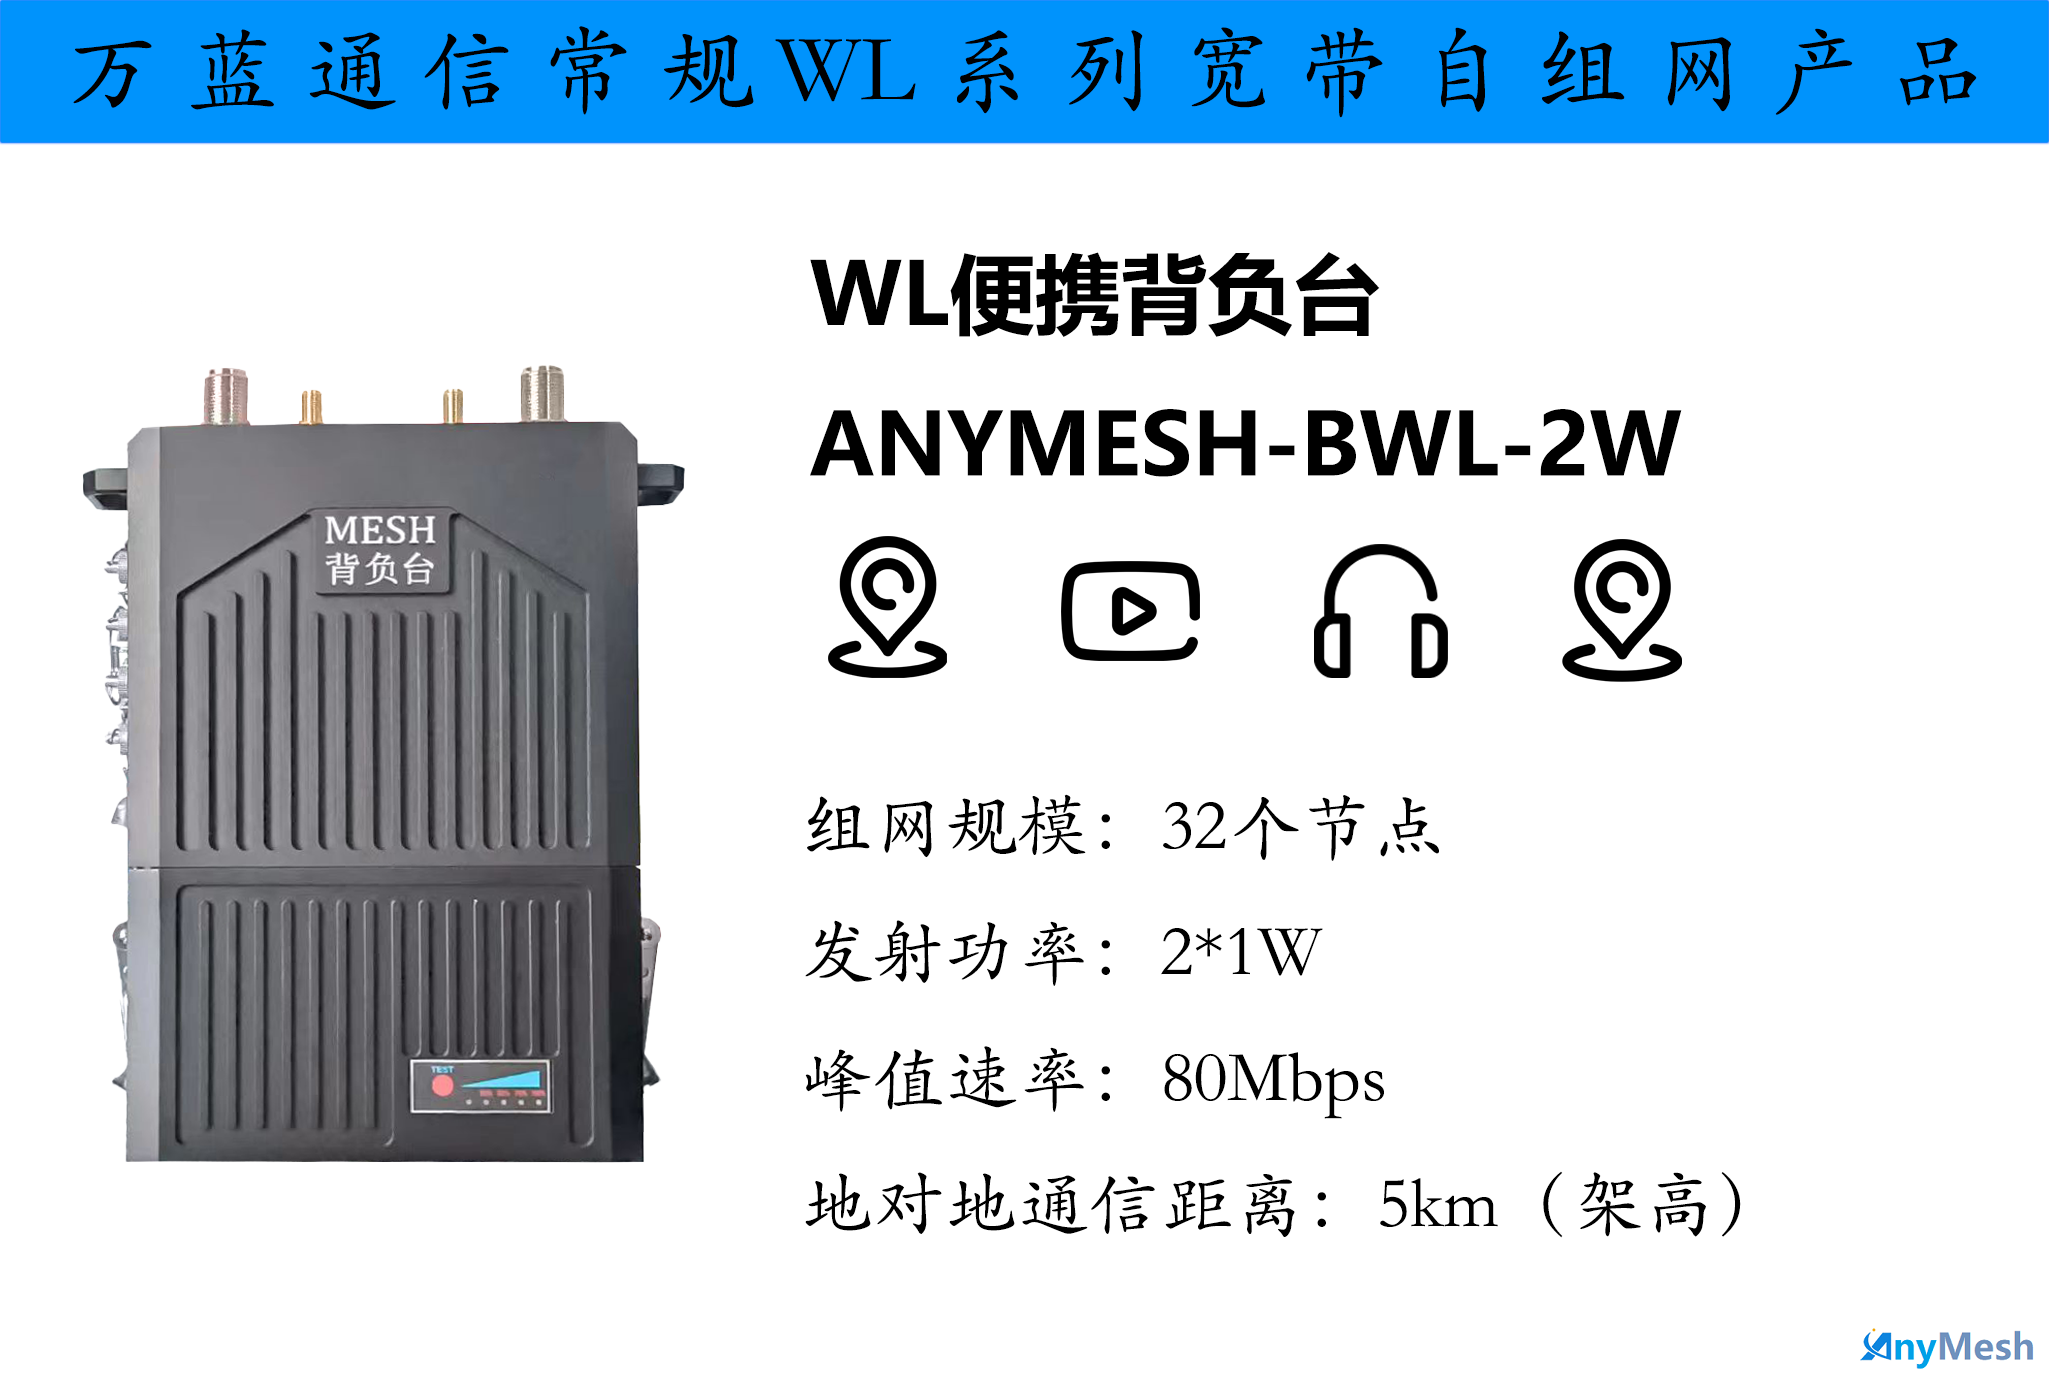 ANYMESH-BWL-2W背负型高带宽无线自组网MESH便携基站